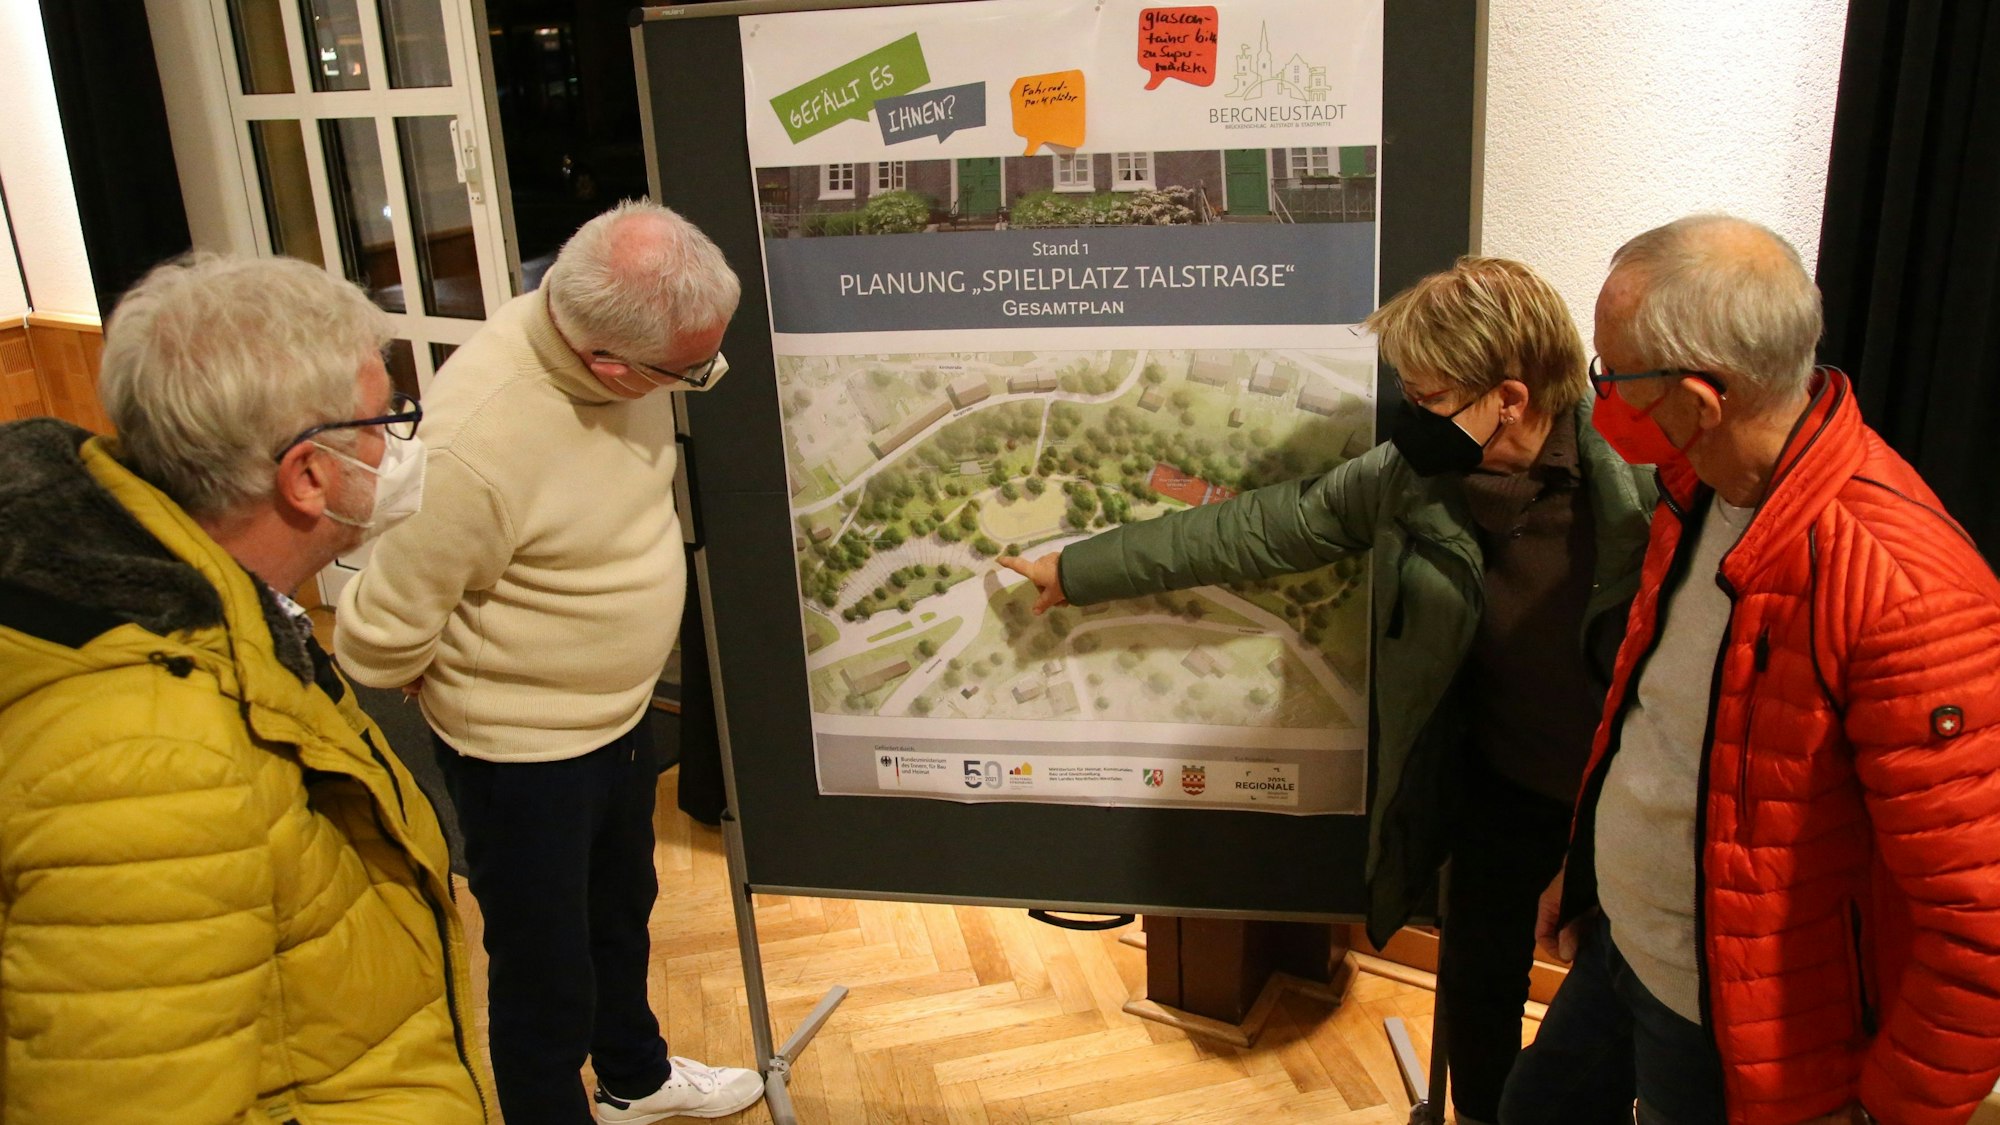 Zu sehen sind vier Menschen, die auf die großformatige Karte eines Spielplatzes schauen und über die Details sprechen.